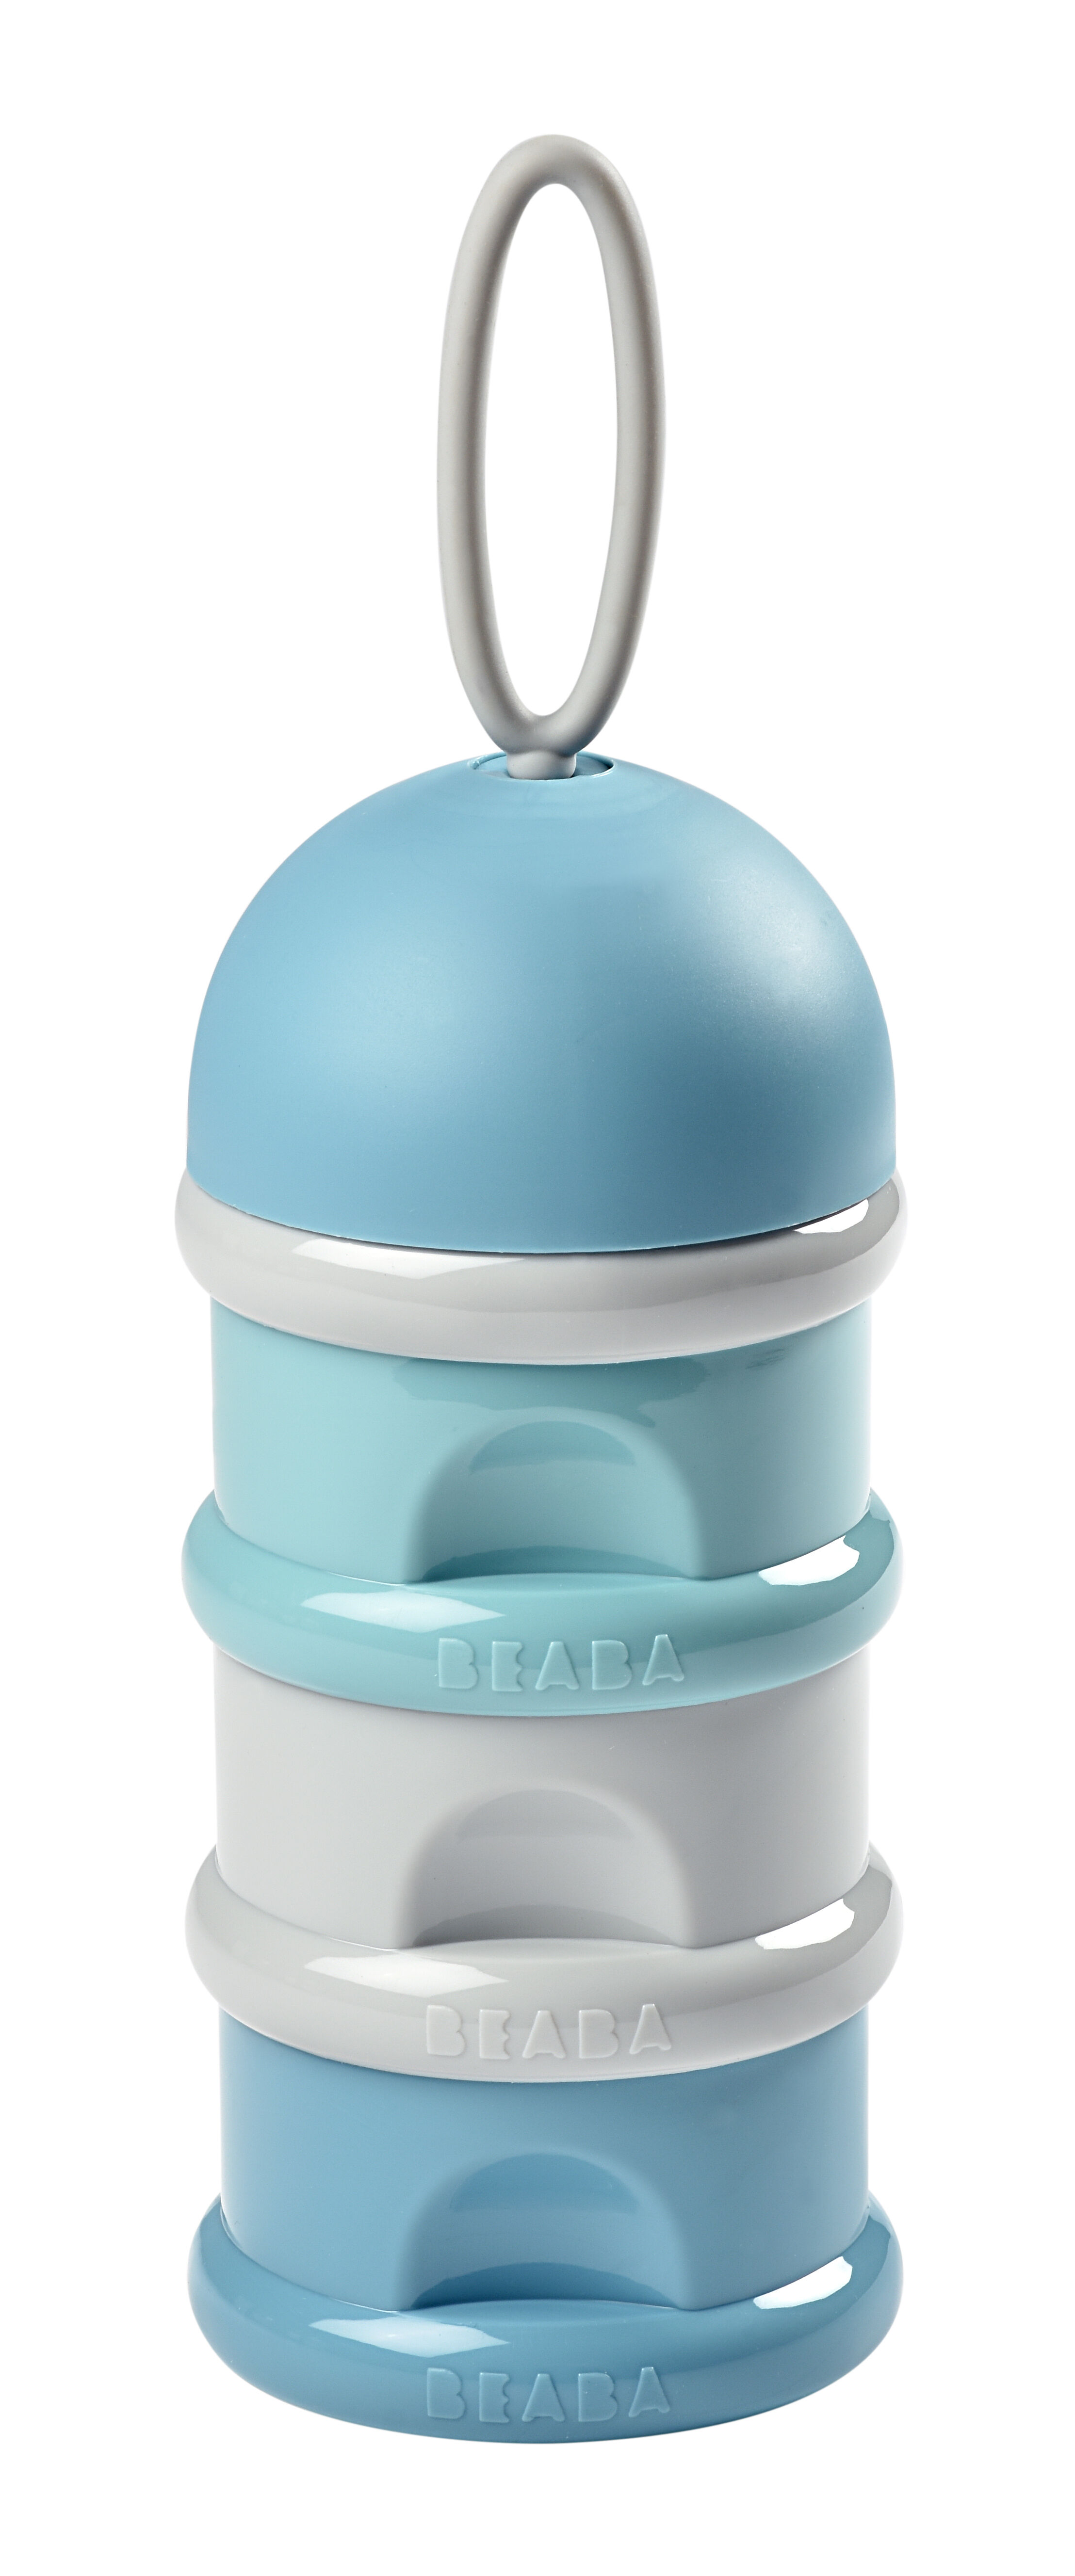 STOBOK Milchpulver Portionierer Milchpulver Dispenser 4 Schichten Formula Behälter Vorratsbehälter für Baby Stapelbar Blau 